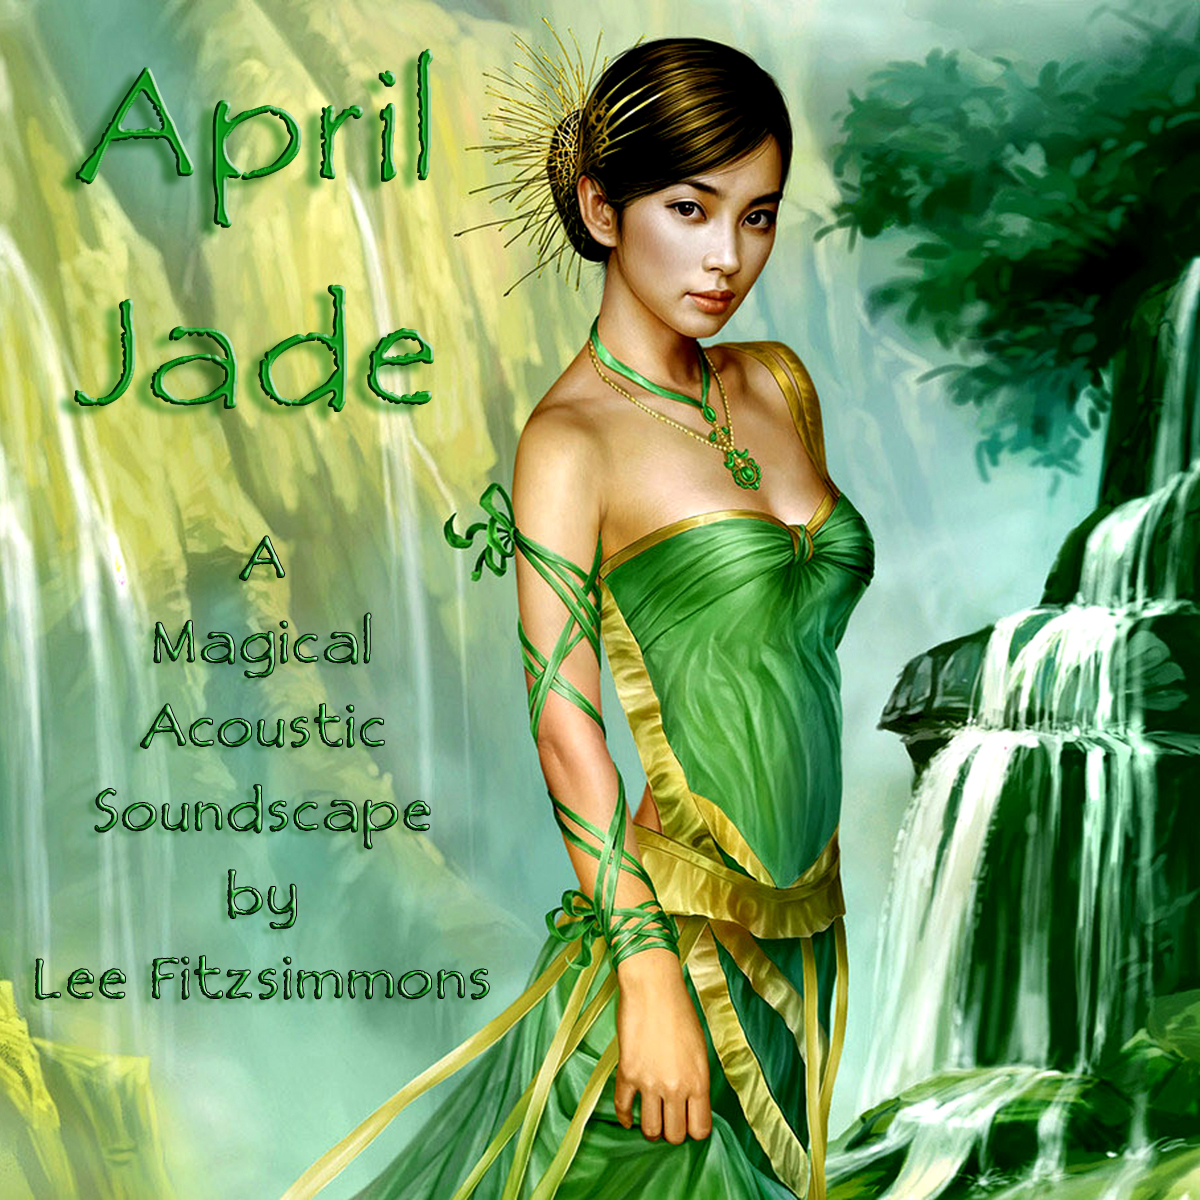 April Jade